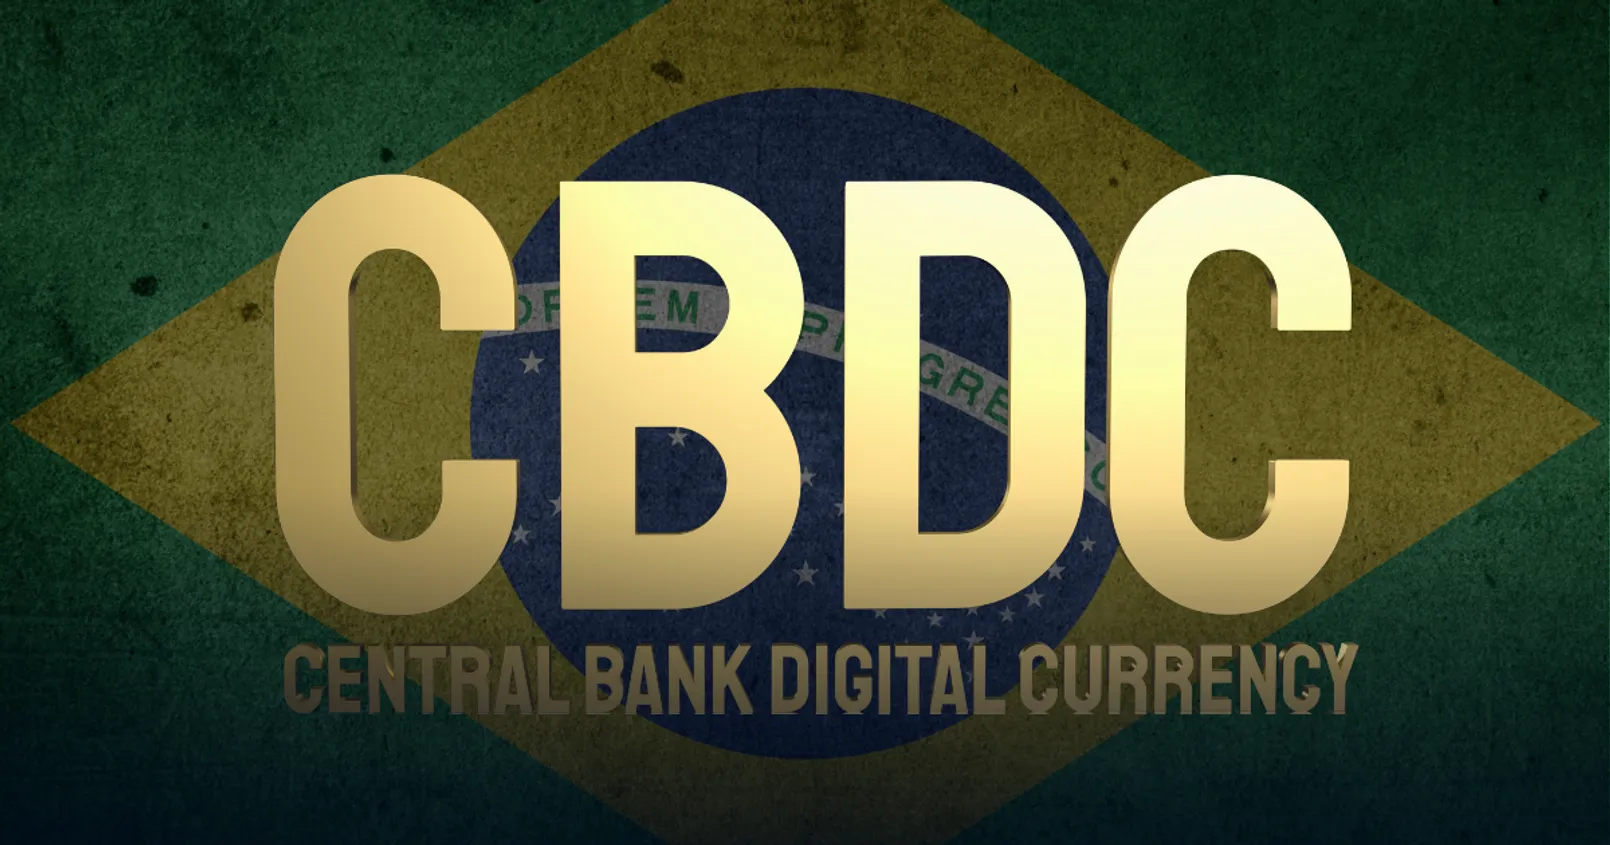 ธนาคารกลางบราซิลปล่อยโครงการนำร่องการใช้งานระบบการชำระเงิน CBDC